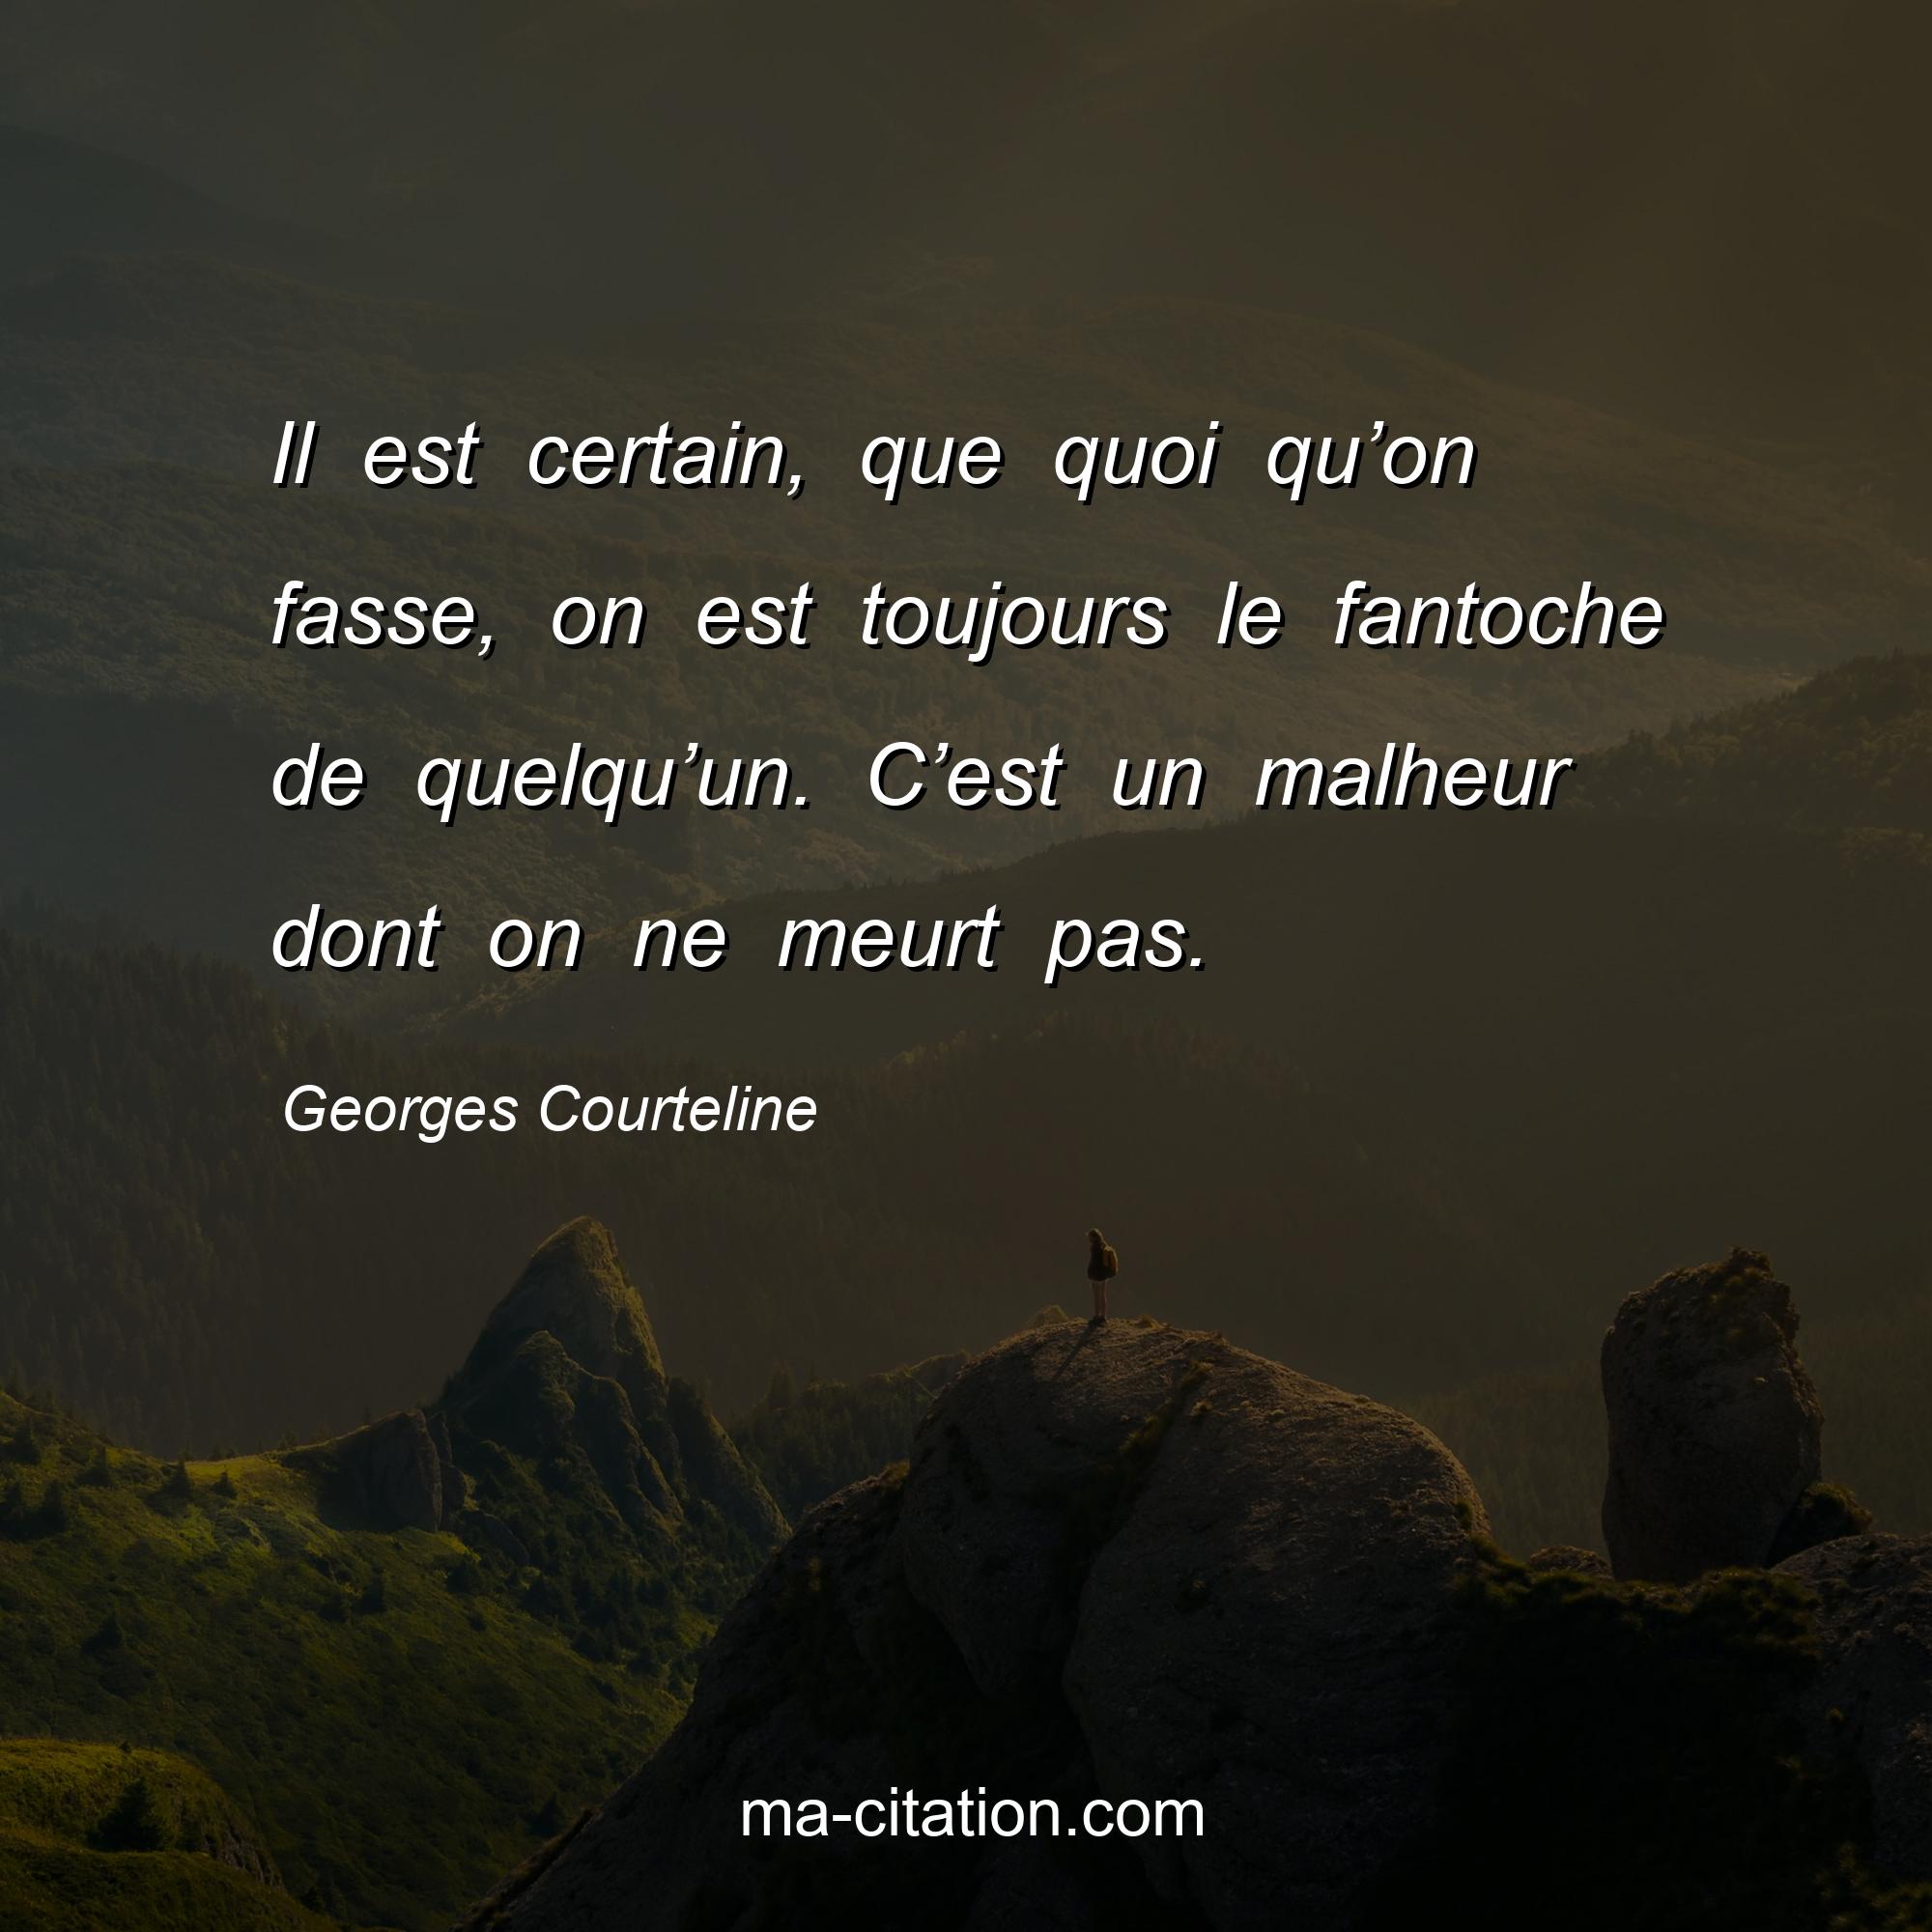 Georges Courteline : Il est certain, que quoi qu’on fasse, on est toujours le fantoche de quelqu’un. C’est un malheur dont on ne meurt pas.